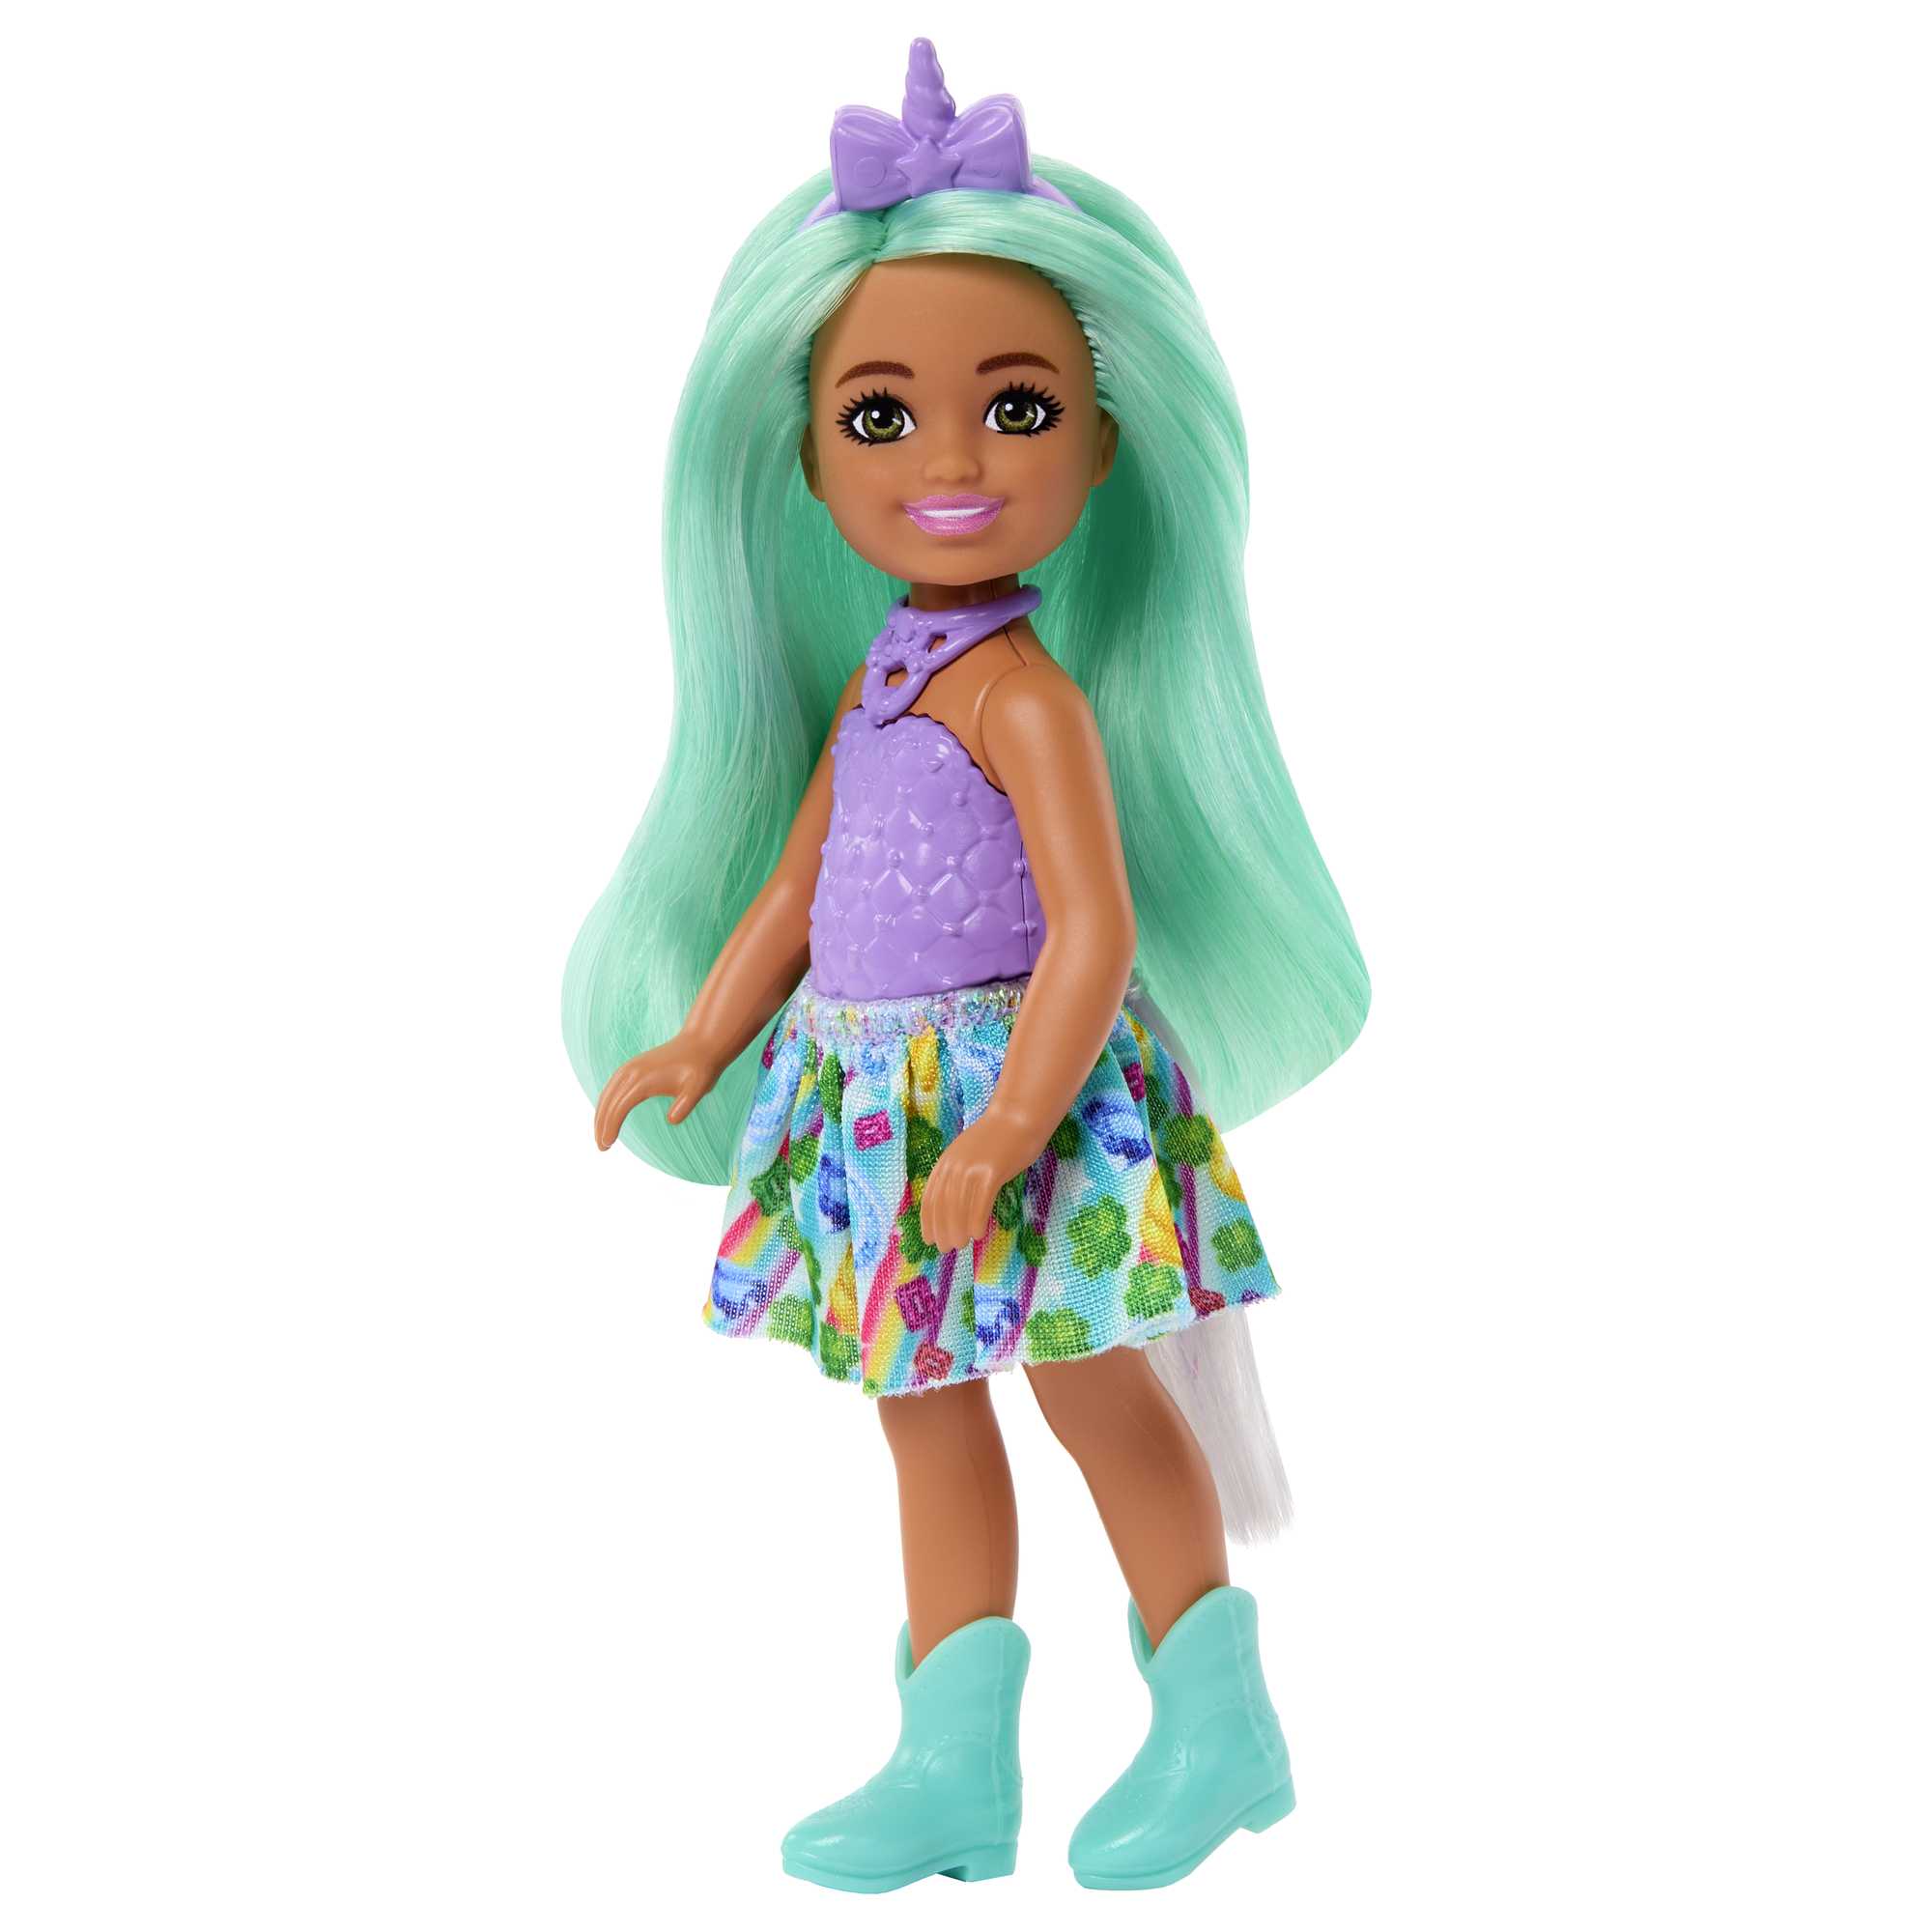 Unicorn-inspired Chelsea Barbie Doll | Mattel